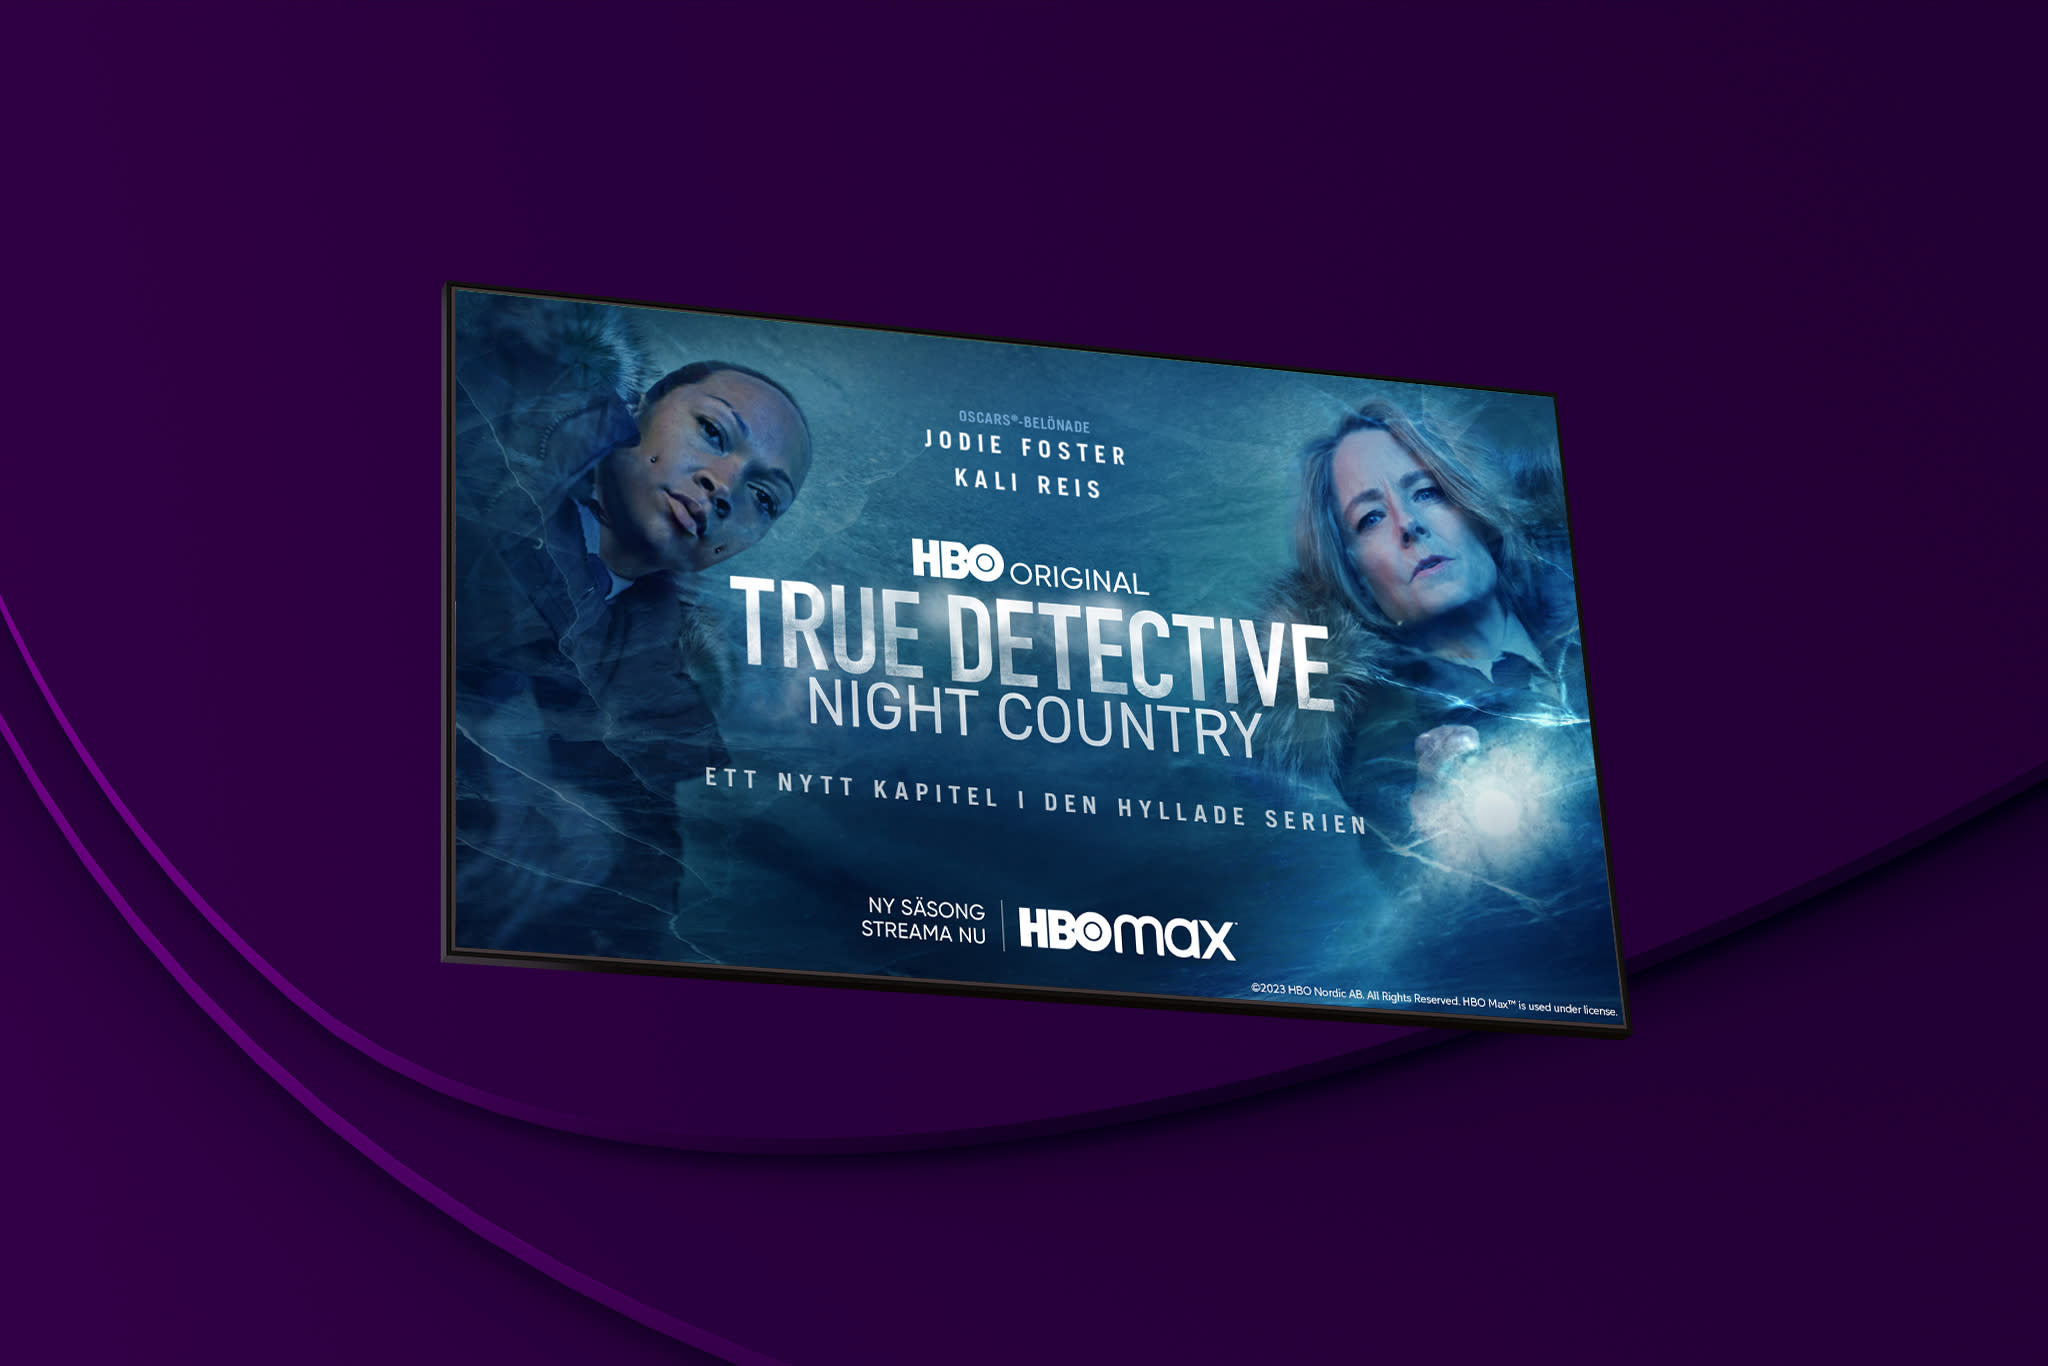 True Detective: Night Country med prisbelönade Jodie Foster och Kali Reis i huvudrollerna kan du streama på HBO Max.